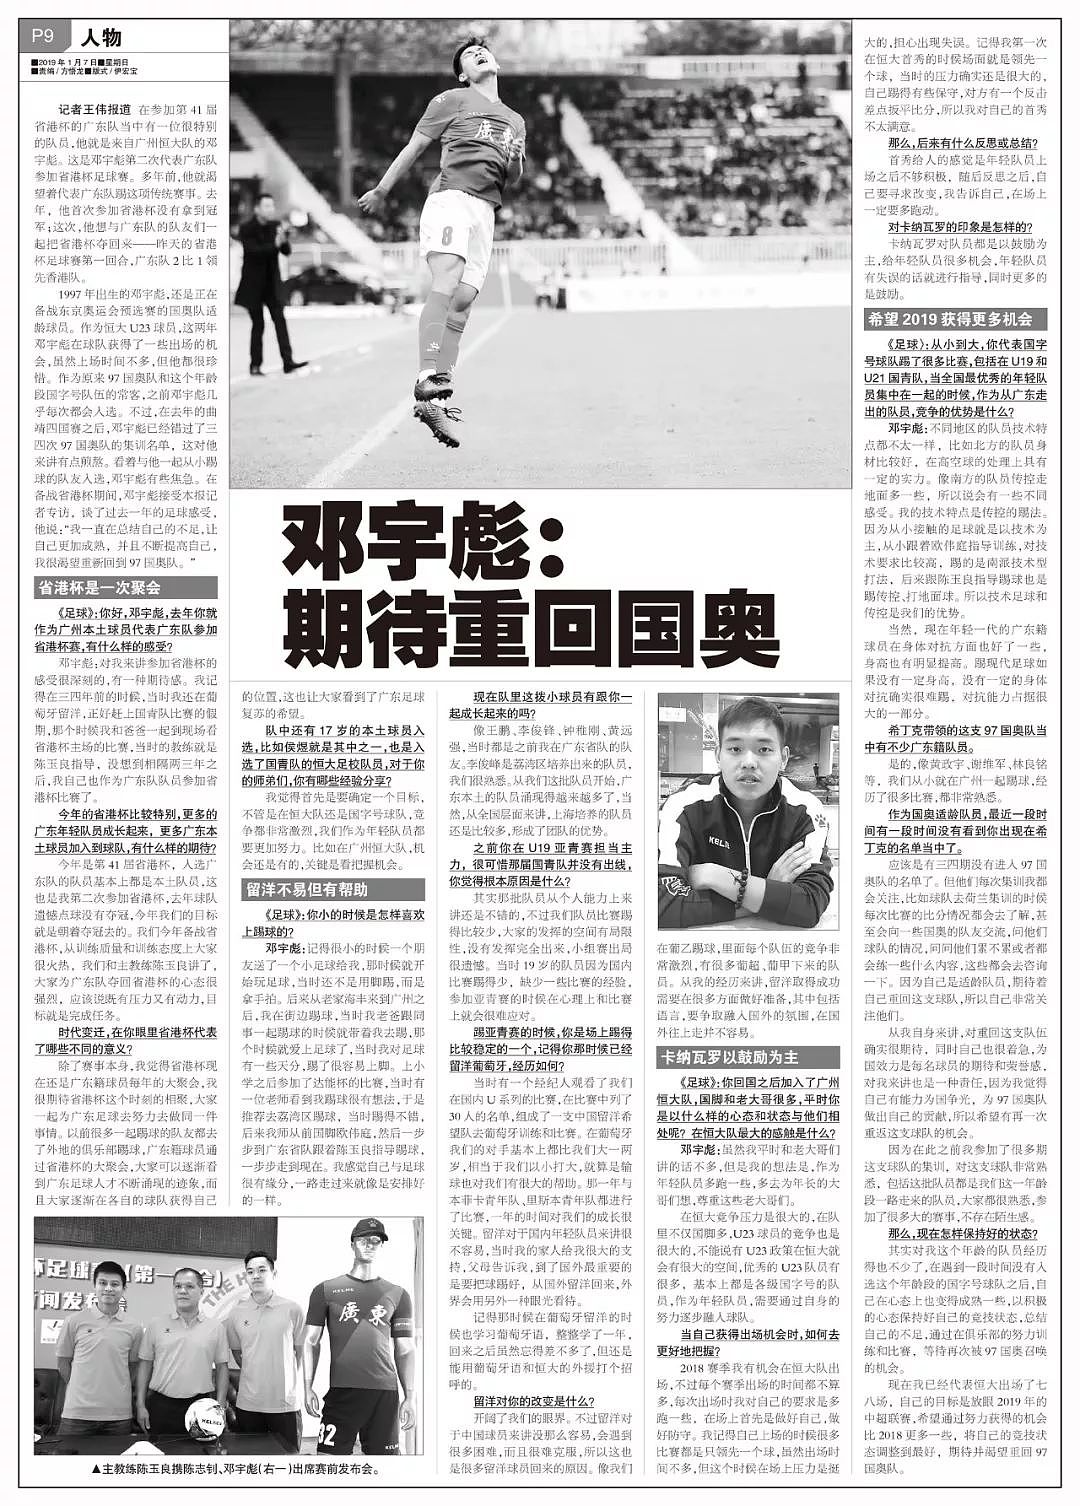 专访 | 邓宇彪：恒大首秀让人觉得不够积极，2019期待重回国奥 - 1